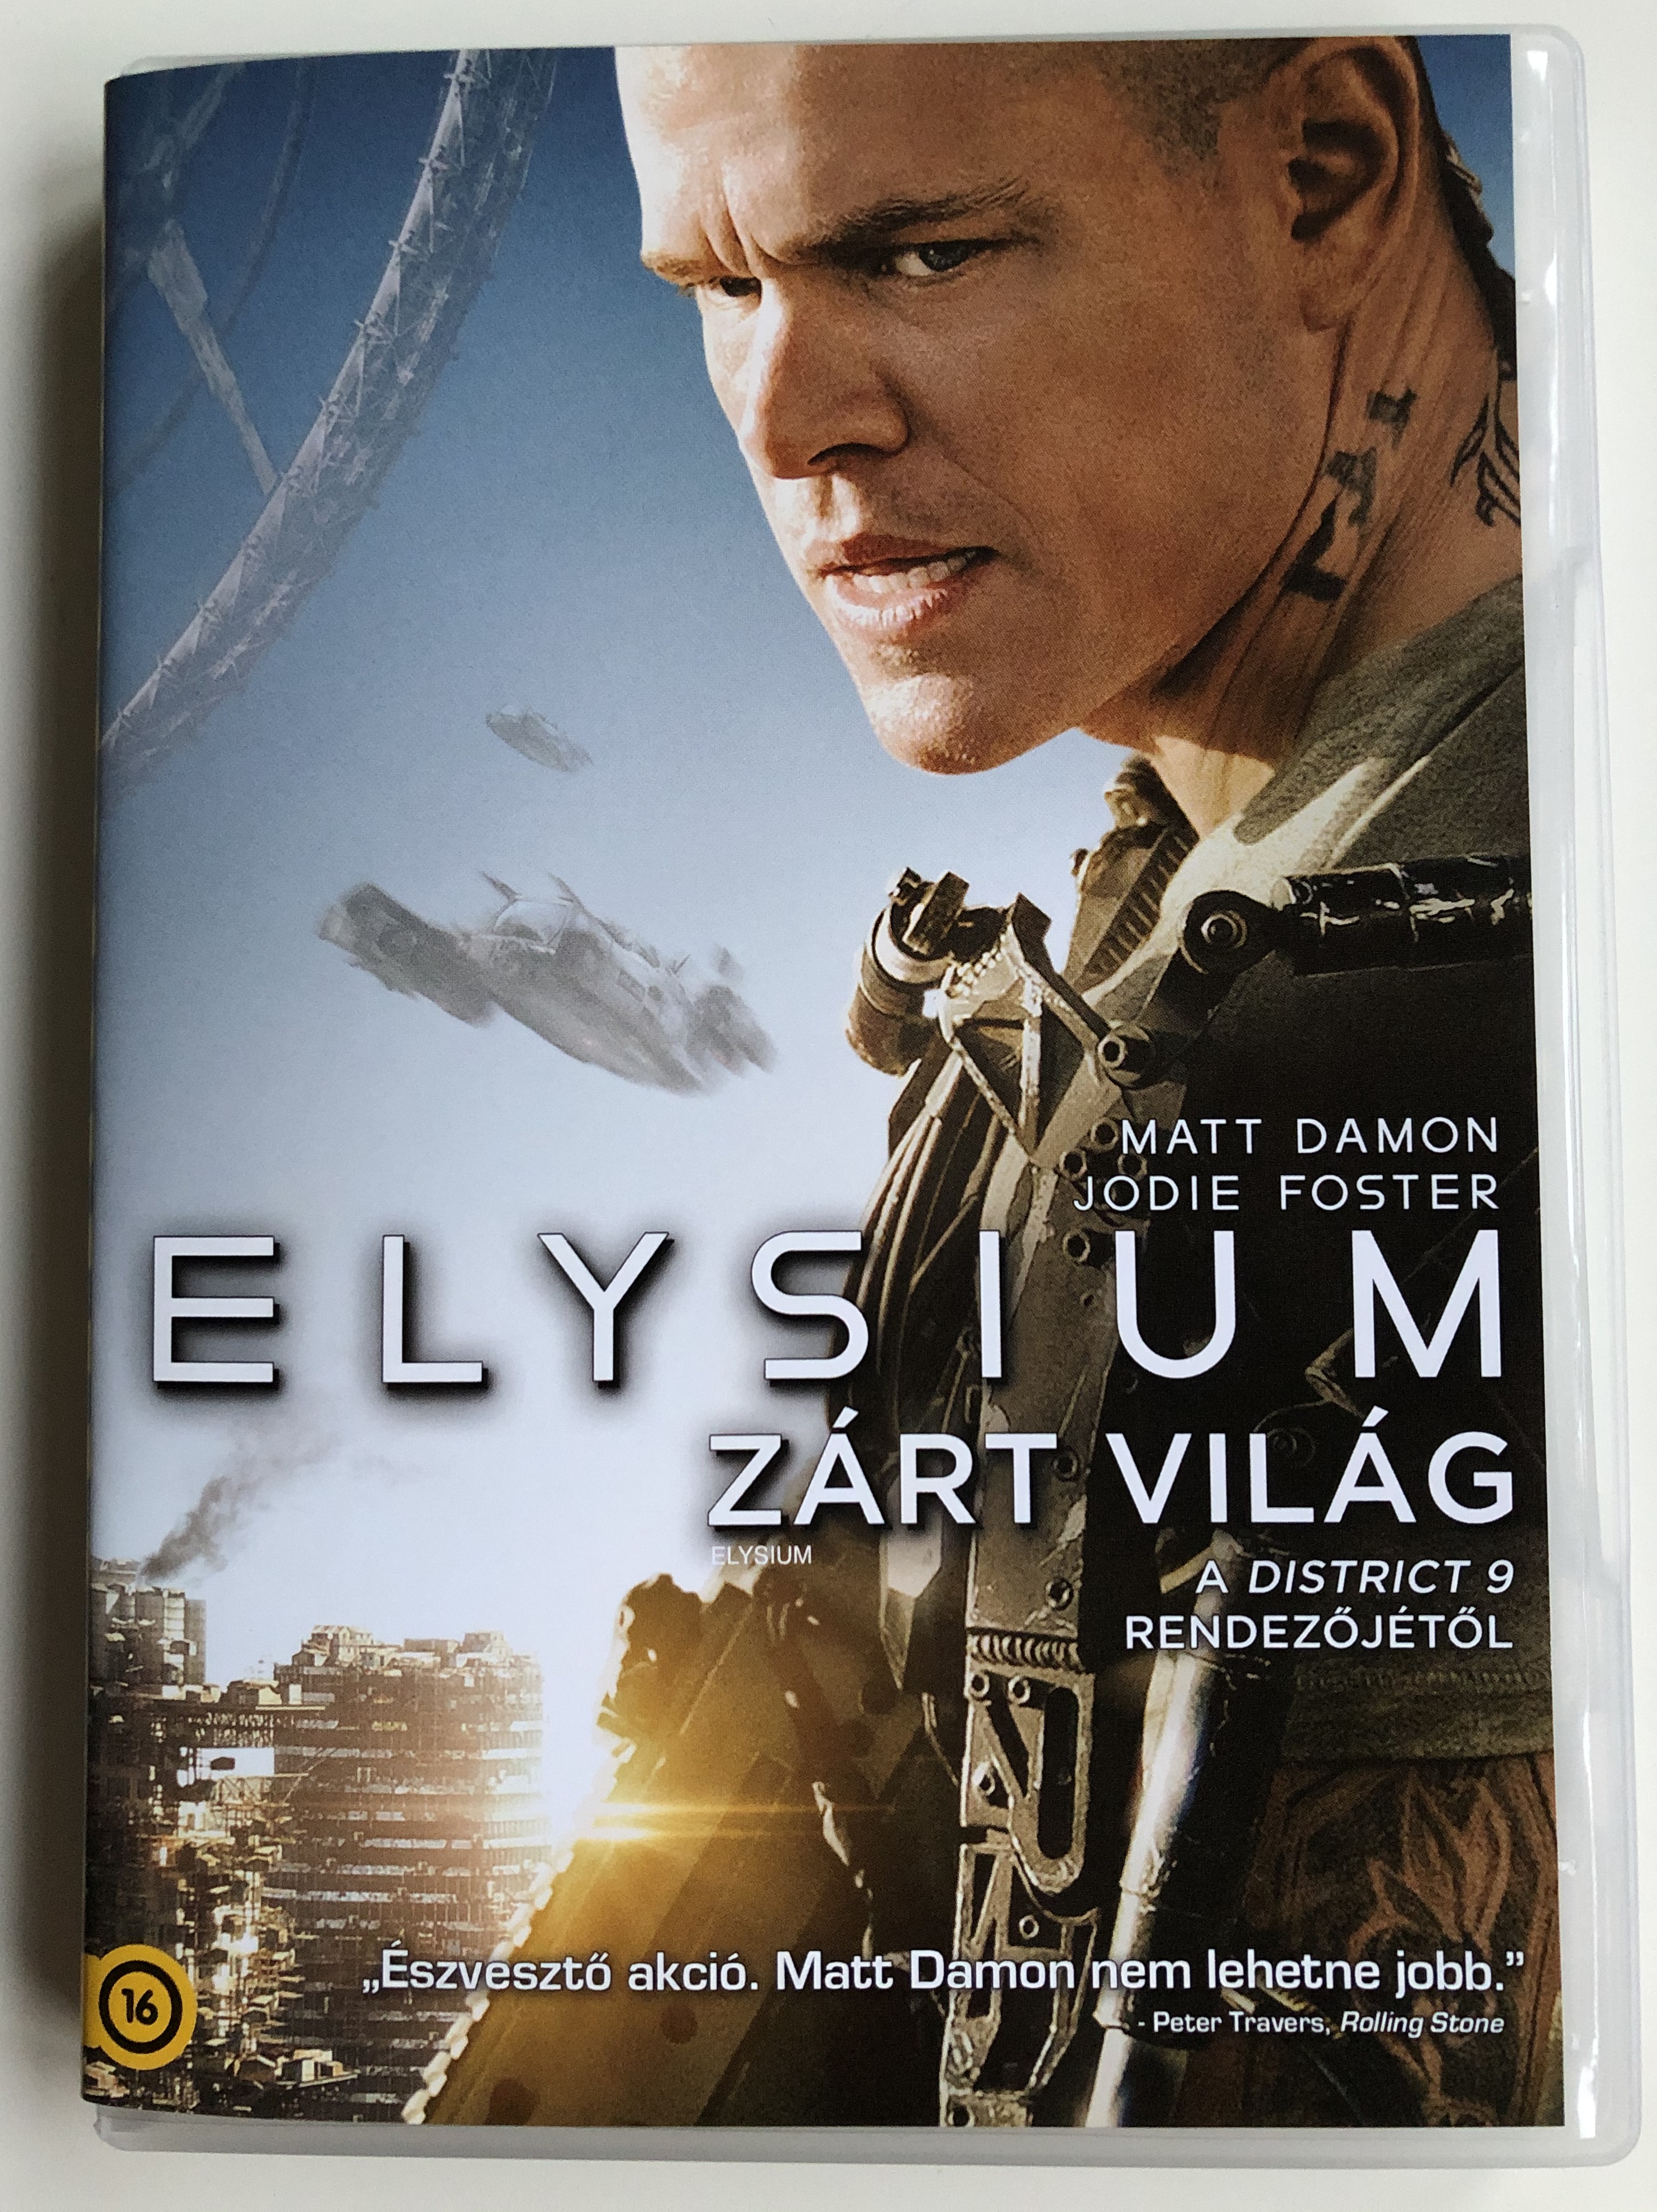 elysium-dvd-2013-z-rt-vil-g-directed-by-neill-blomkamp-1.jpg